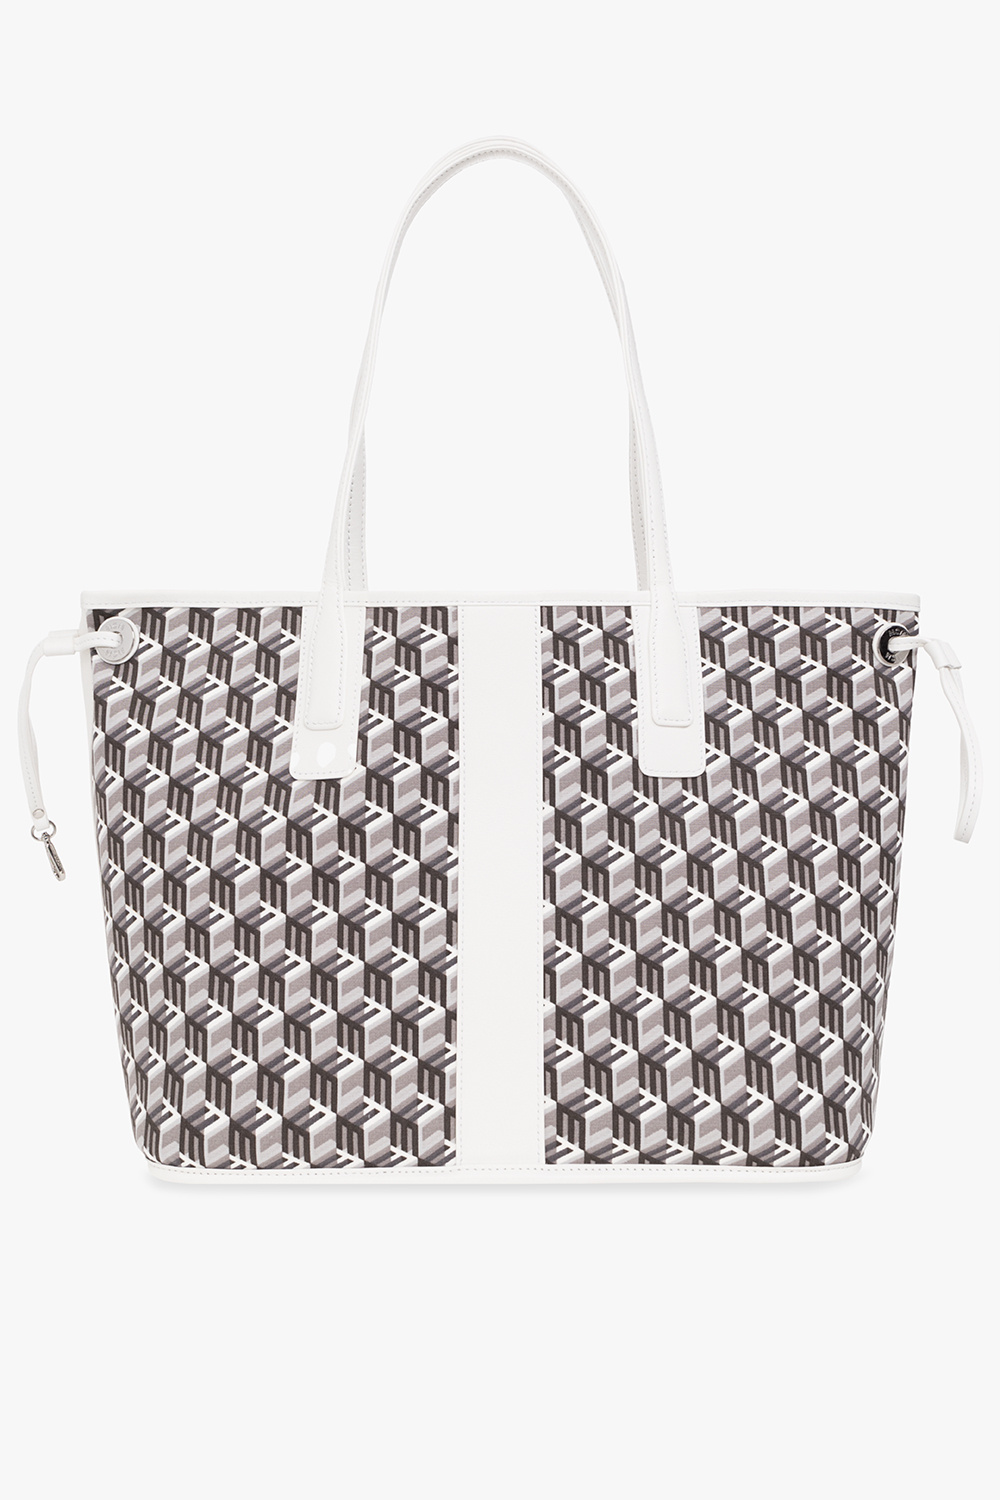 MCM ‘Liz Large’ shopper KAWS bag